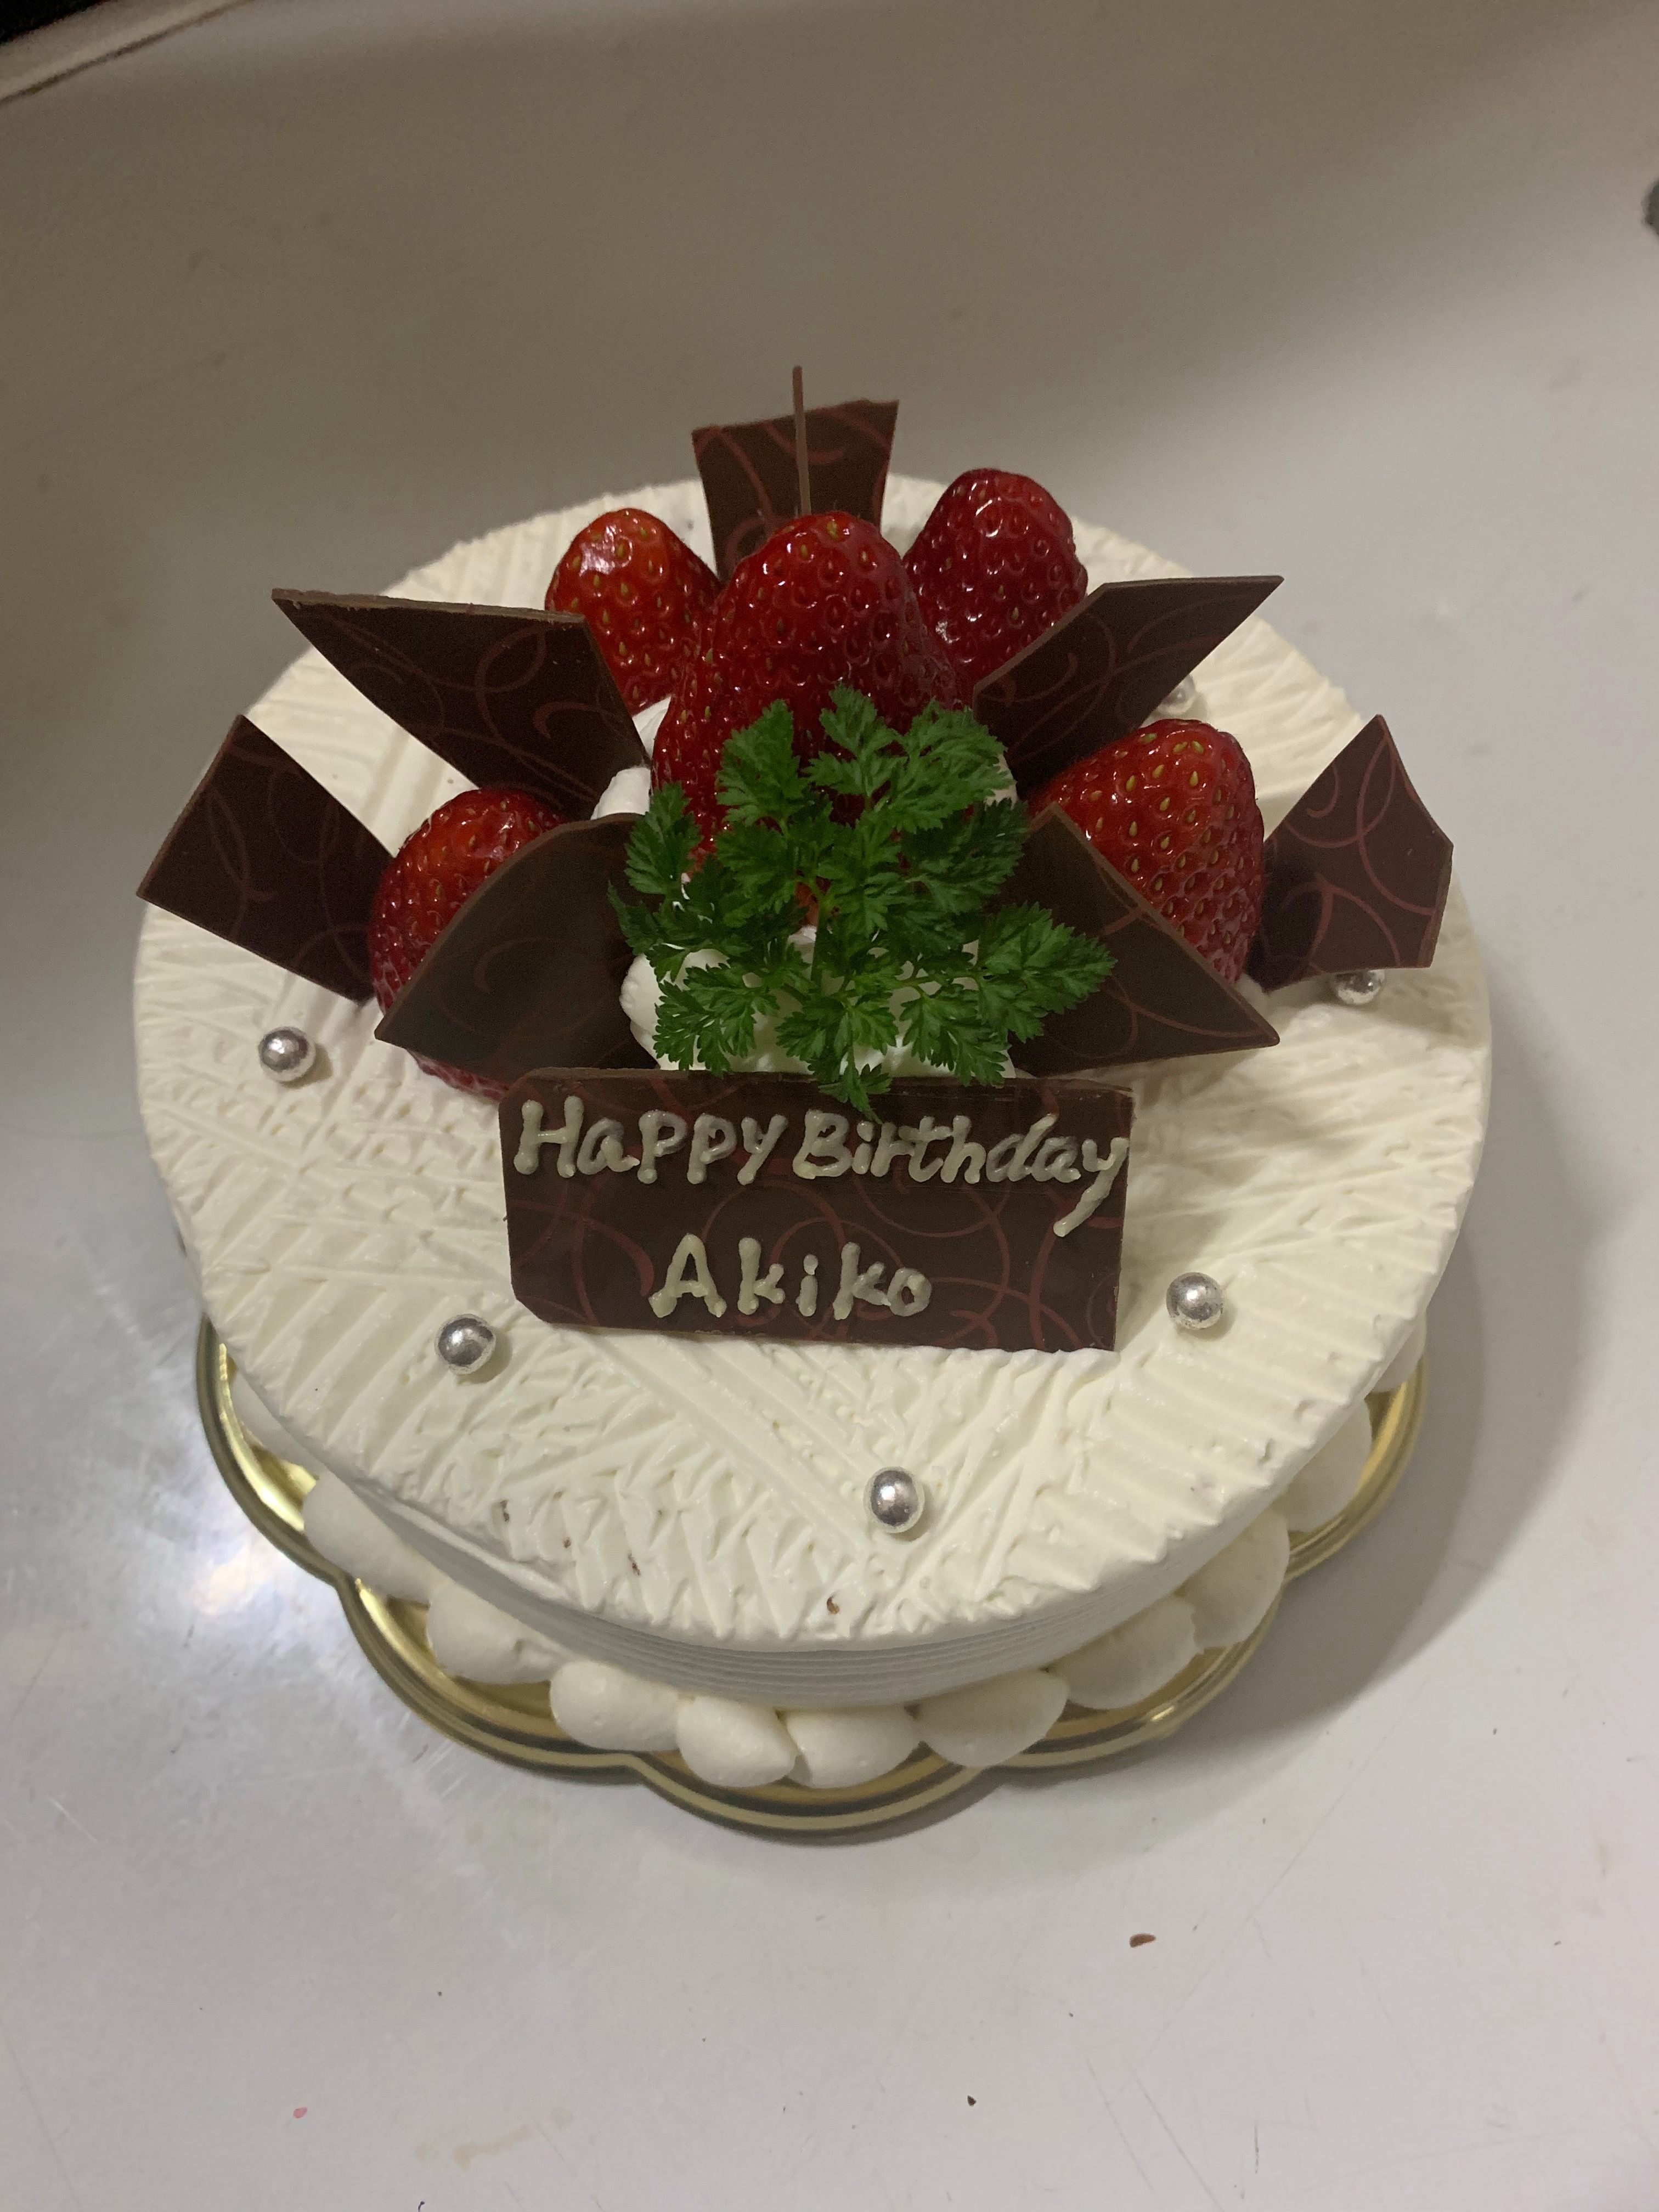 お誕生日ケーキ宅配 東京 横浜 川崎 デコレーションケーキのデリバリーショップ 楽天ブログ